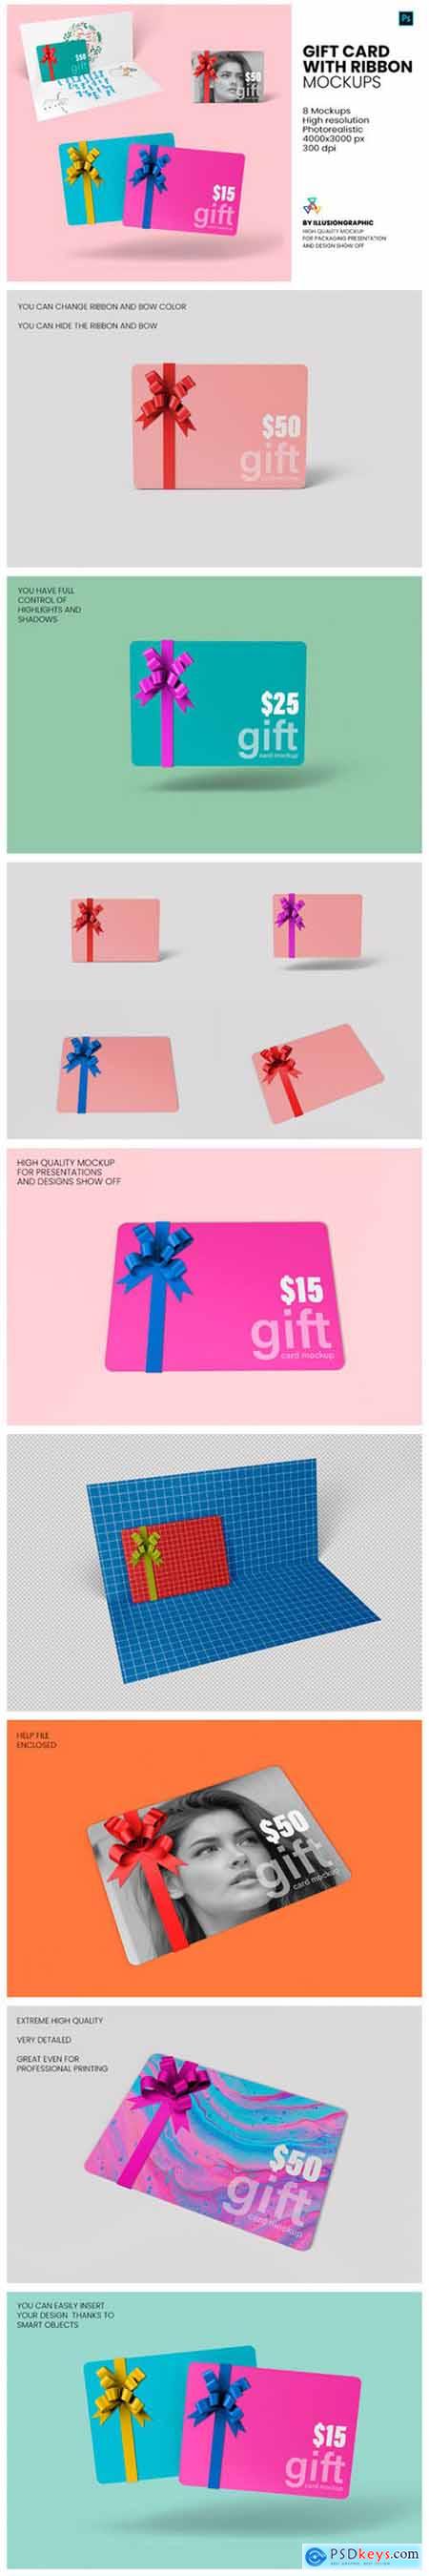 Gift Card with Ribbon Mockup - 8 Views 6713904